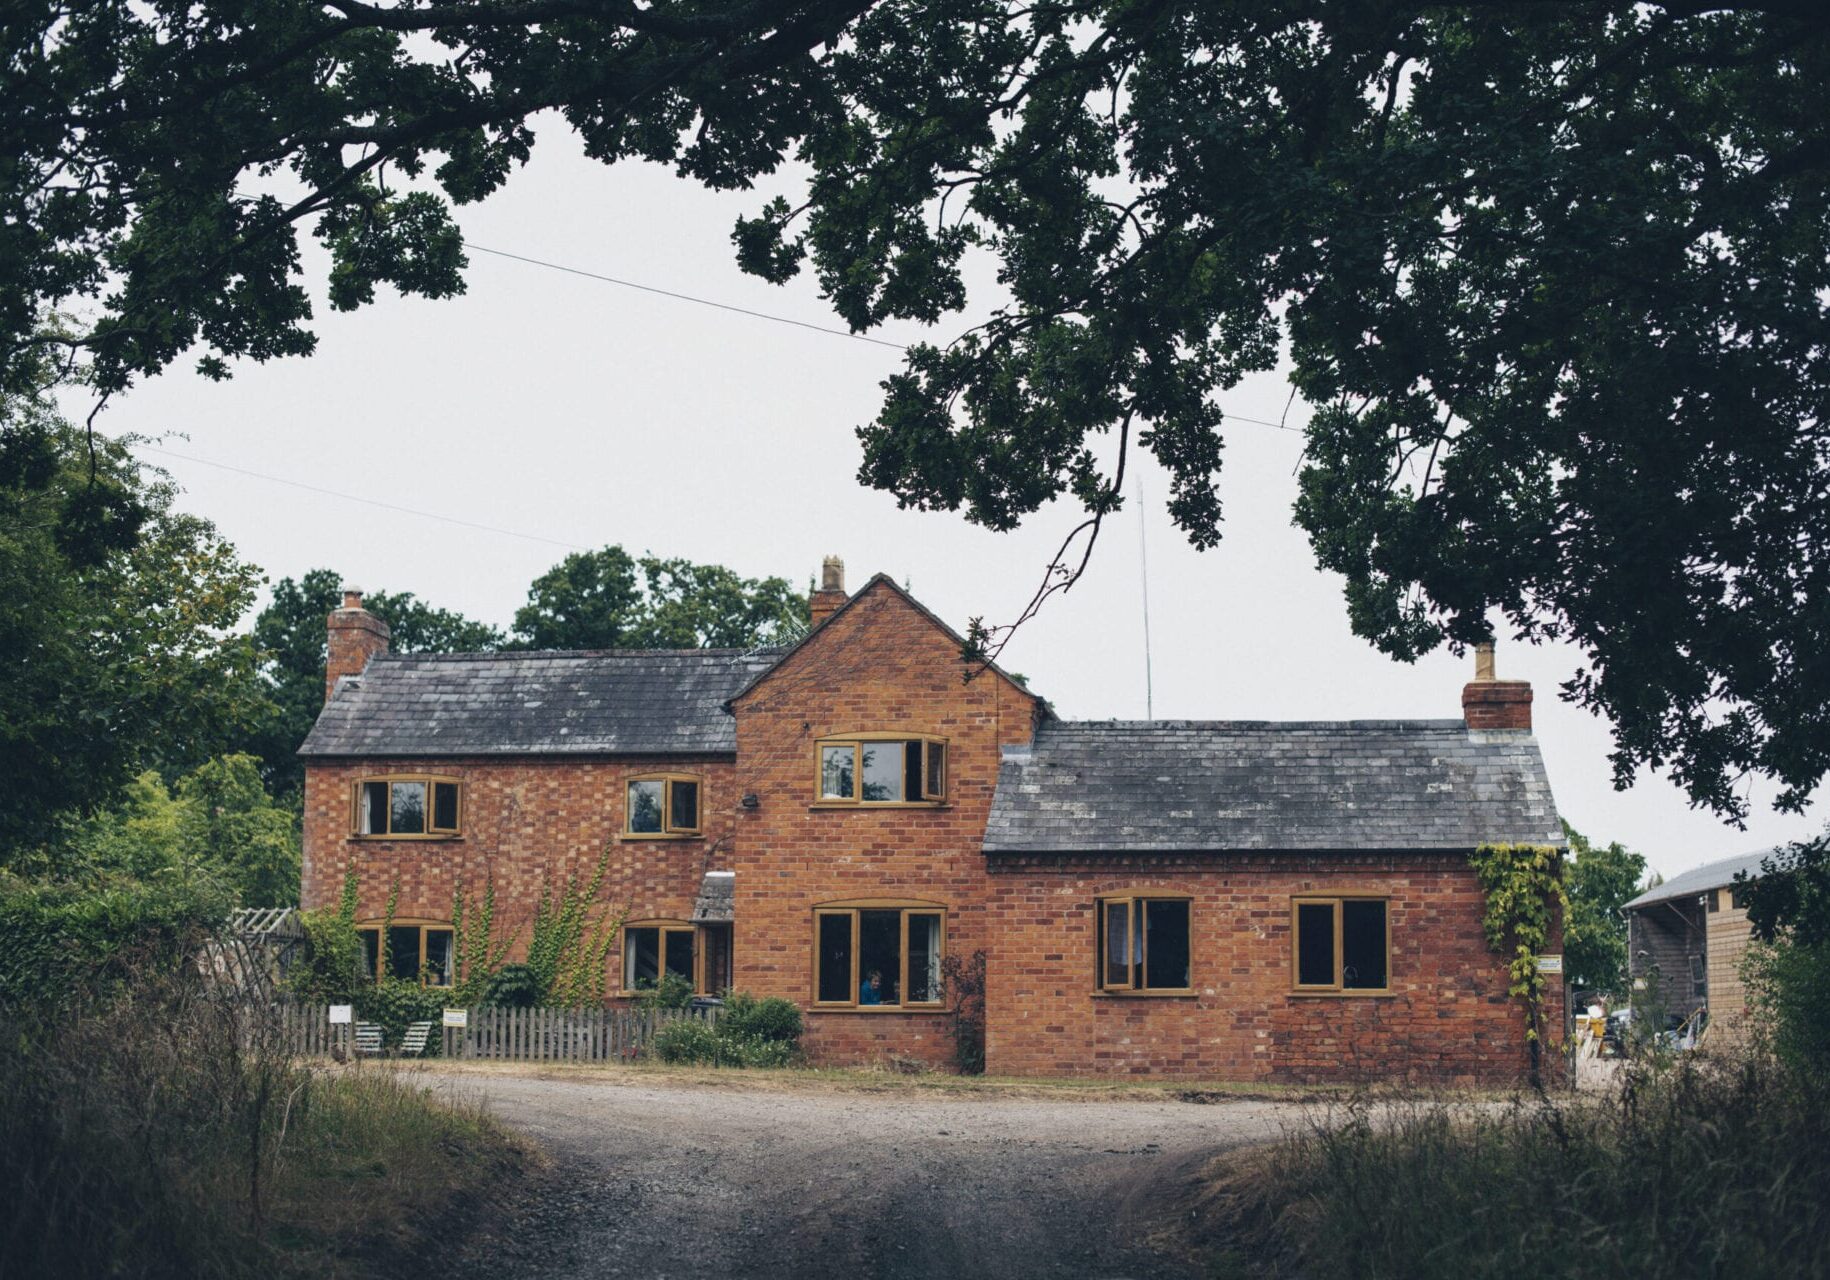 A farm house